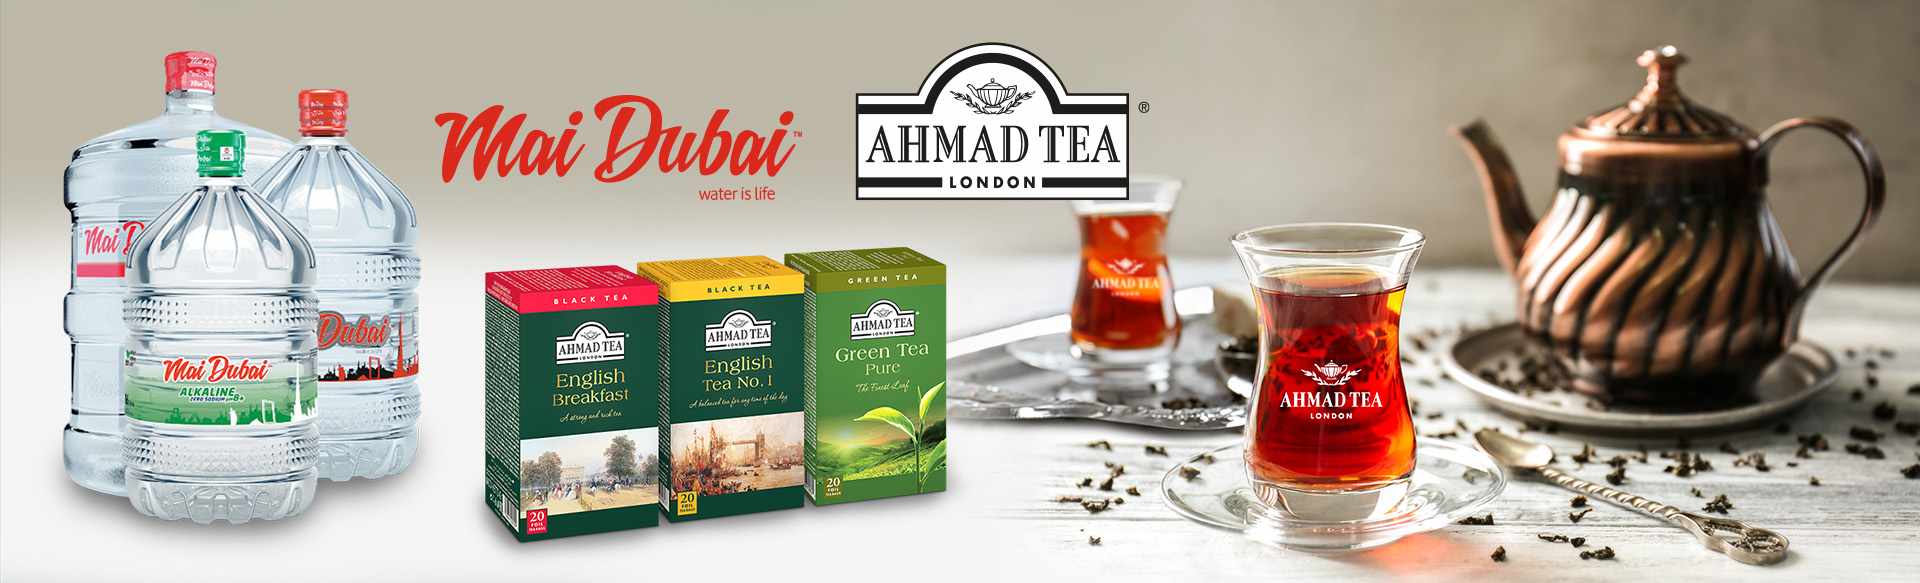 Ahmad Tea & Mai Dubai